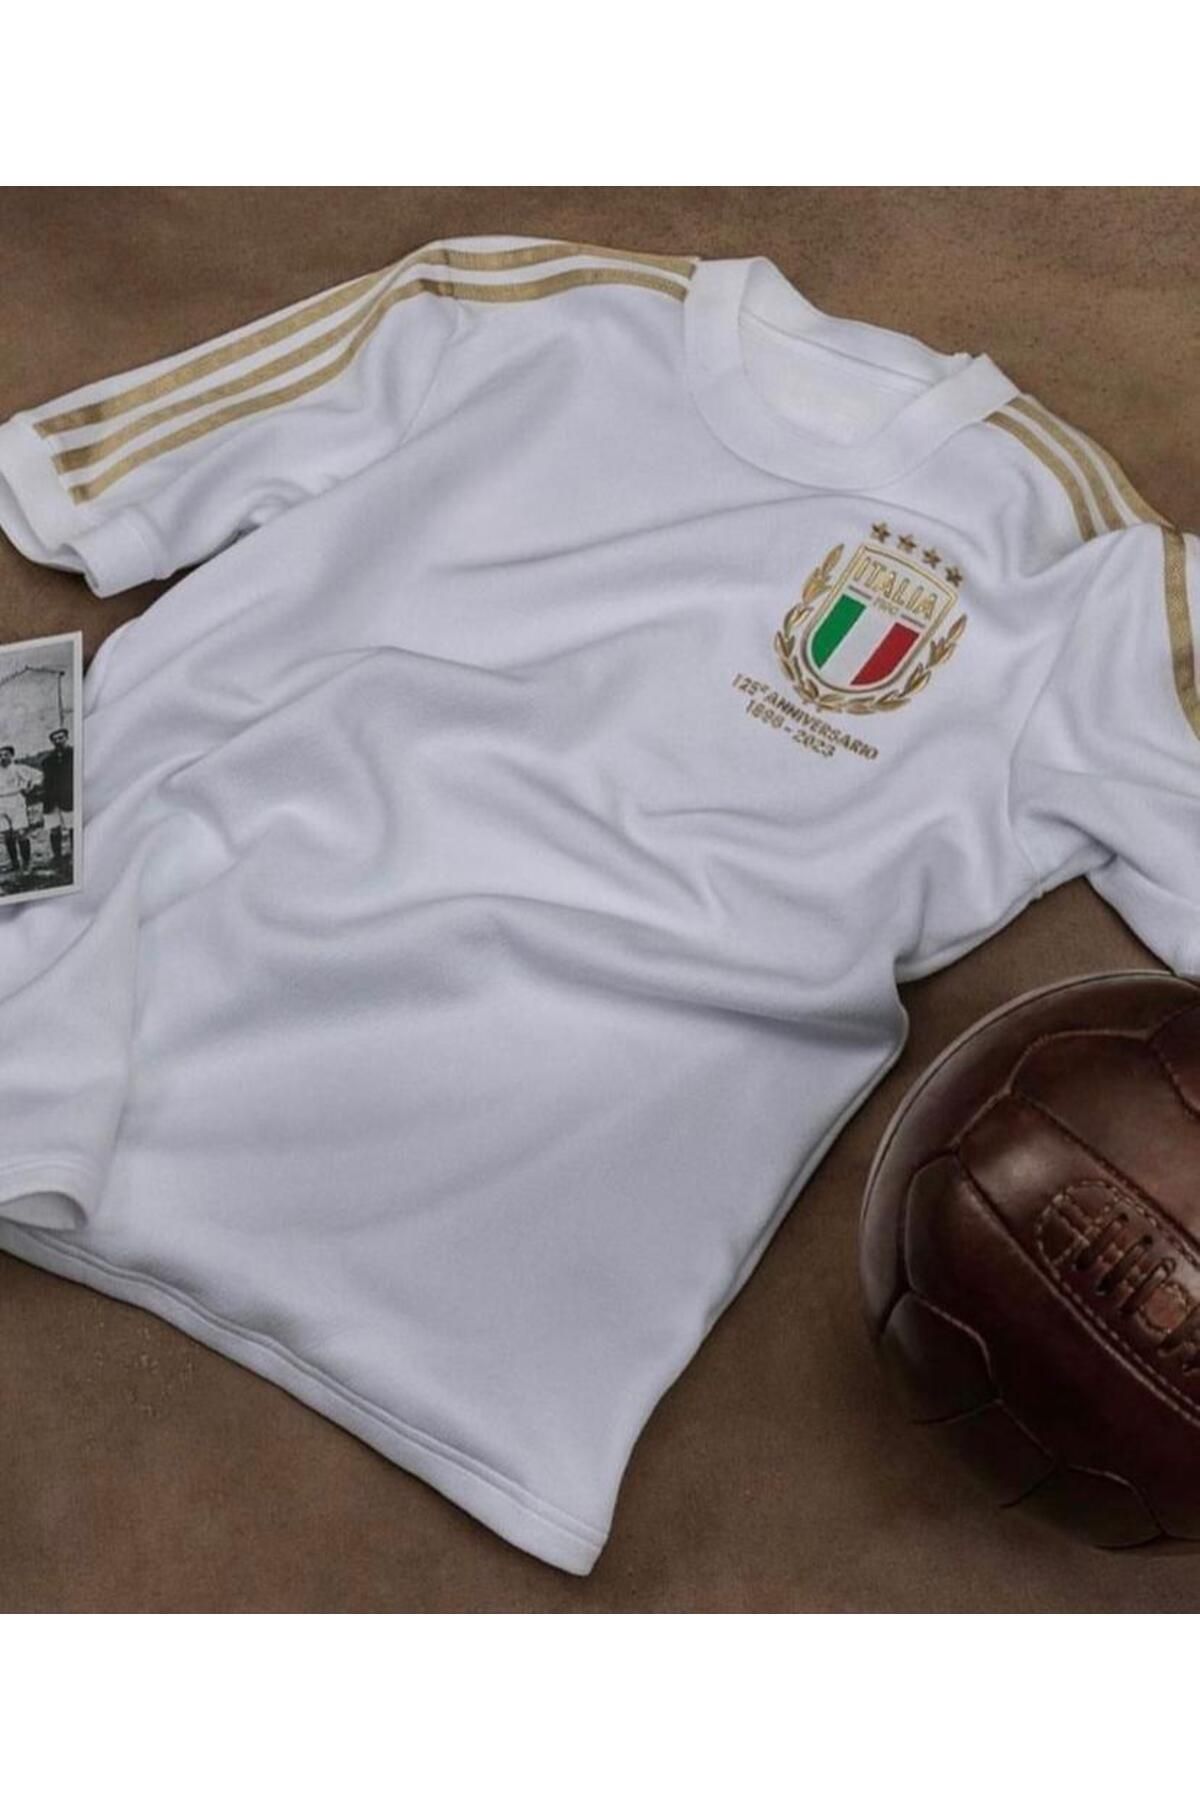 Lion Spor Italya 125.yıl Özel Tasarım Beyaz Forması - 125. Yıl Isimsiz Özel Tasarım Forma